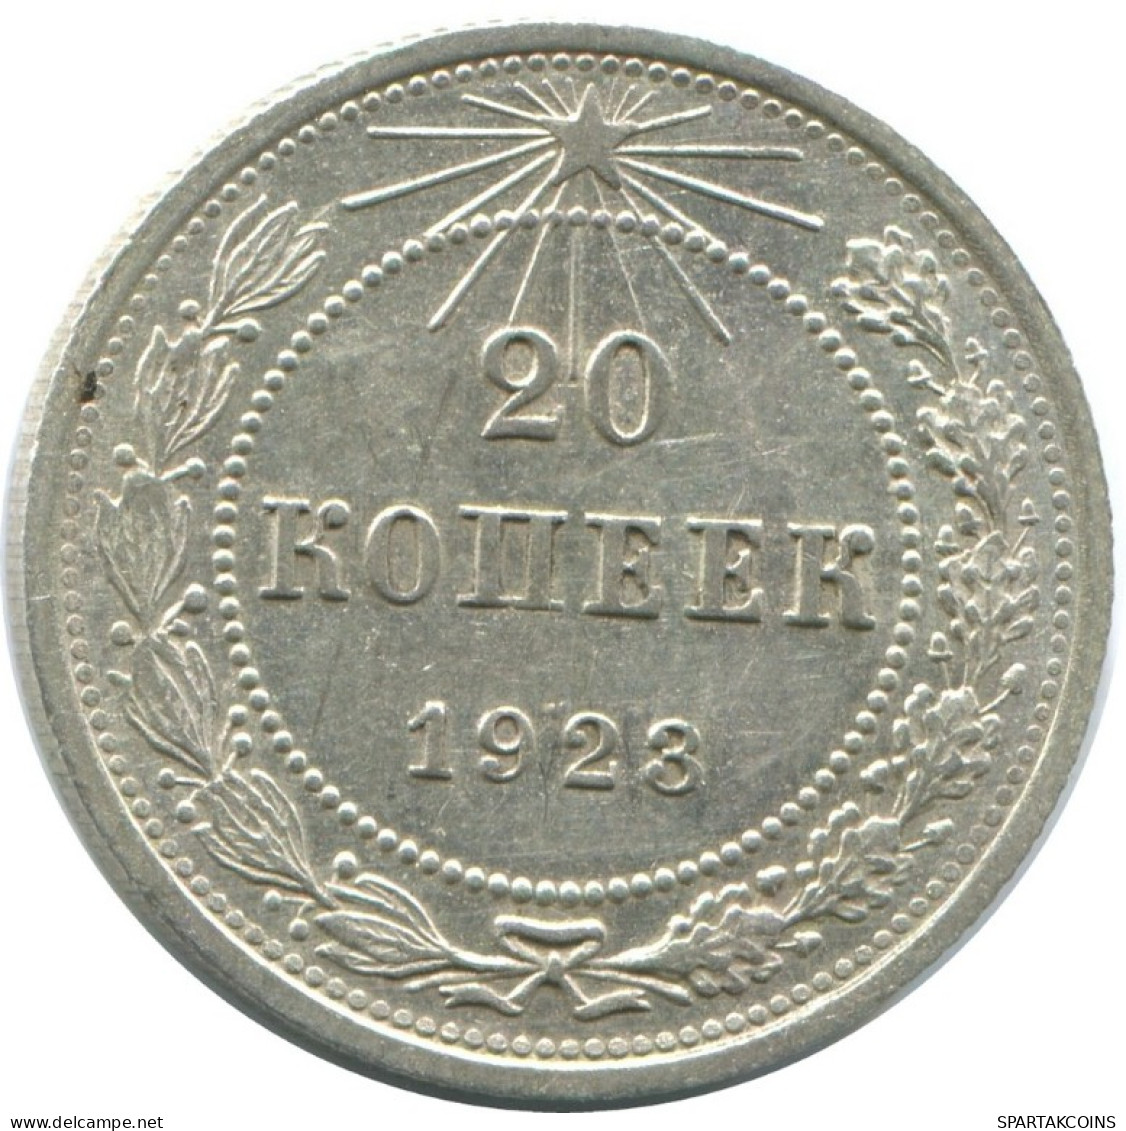 20 KOPEKS 1923 RUSSLAND RUSSIA RSFSR SILBER Münze HIGH GRADE #AF646.D.A - Russia